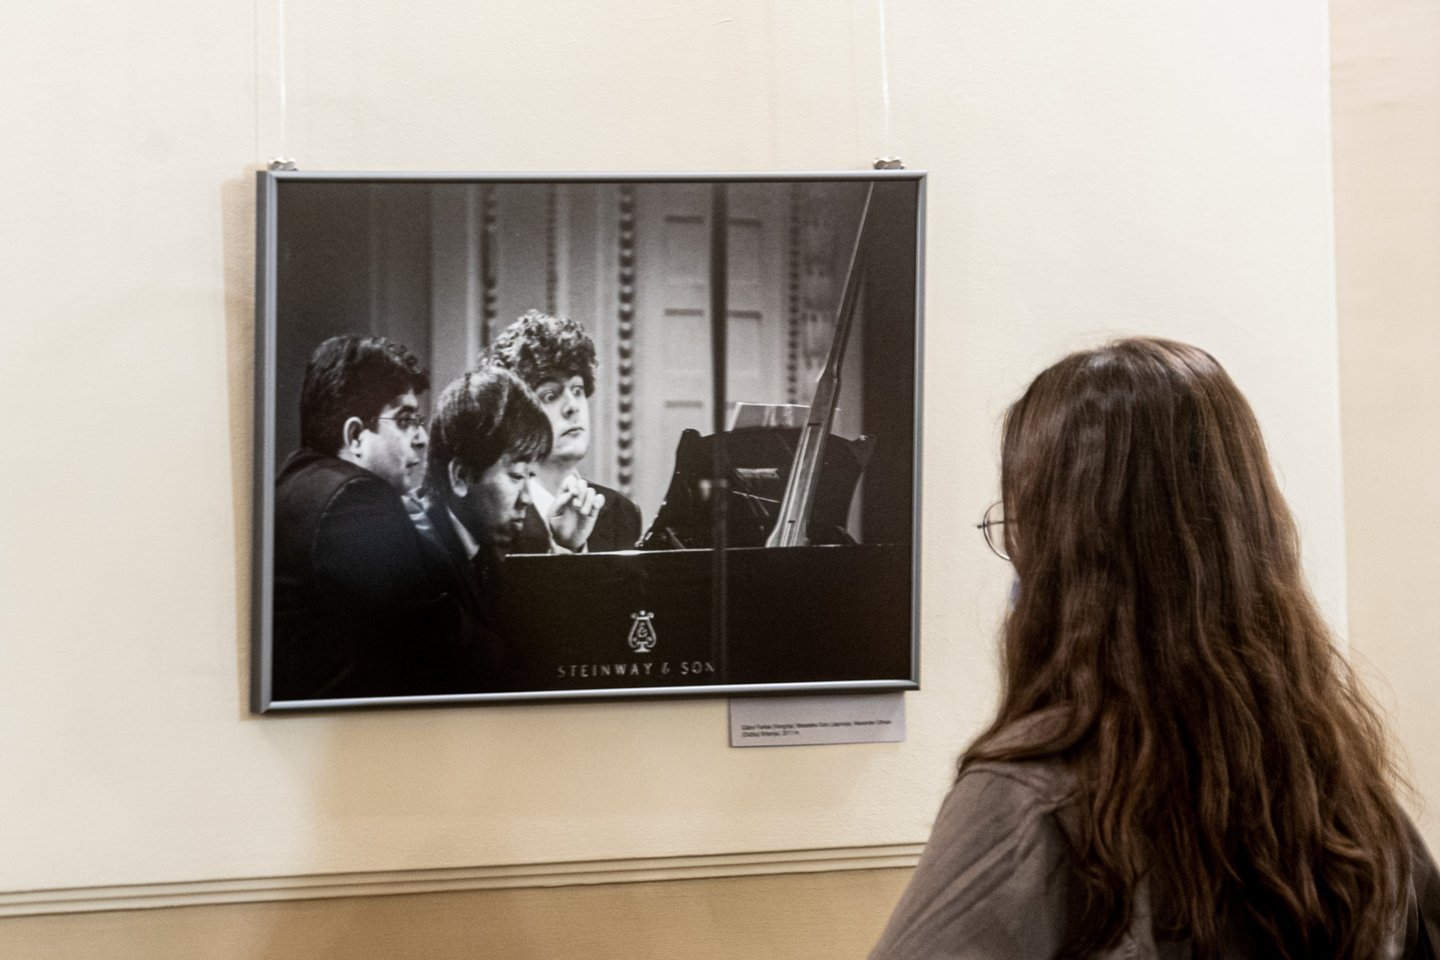 Filharmonijos fojė eksponuojama D.Matvejevo fotografijų paroda atspindinti ryškias festivalio dešimtmečio akimirkas, nuotaikas, įspūdžius.<br> D.Matvejevo nuotr.